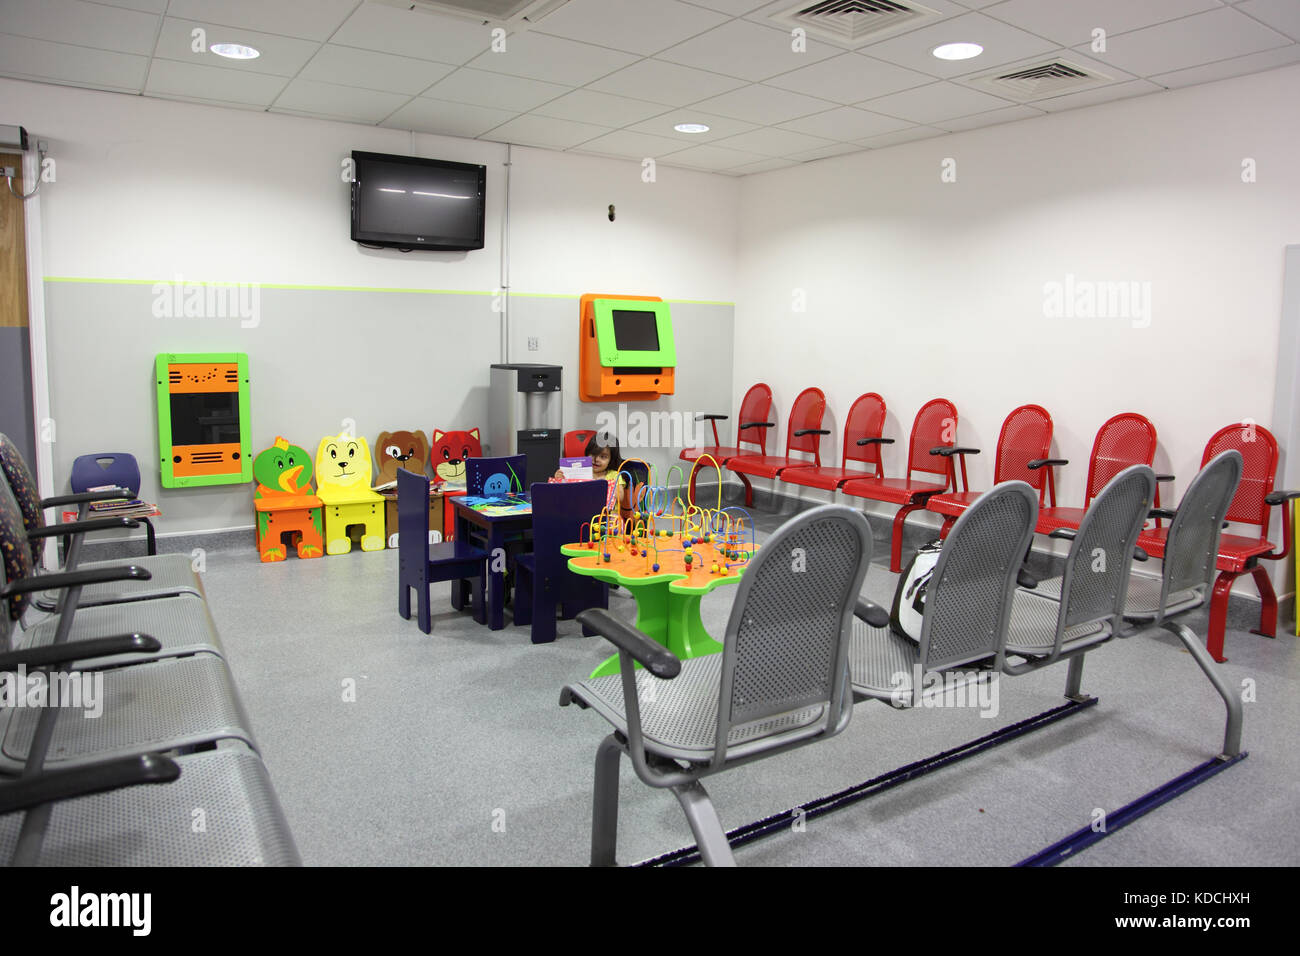 Wartezimmer für die Familie in einer neuen pädiatrischen Abteilung in einem Krankenhaus in East London, Großbritannien. Zeigt das kleine Kind beim Spielen. Stockfoto